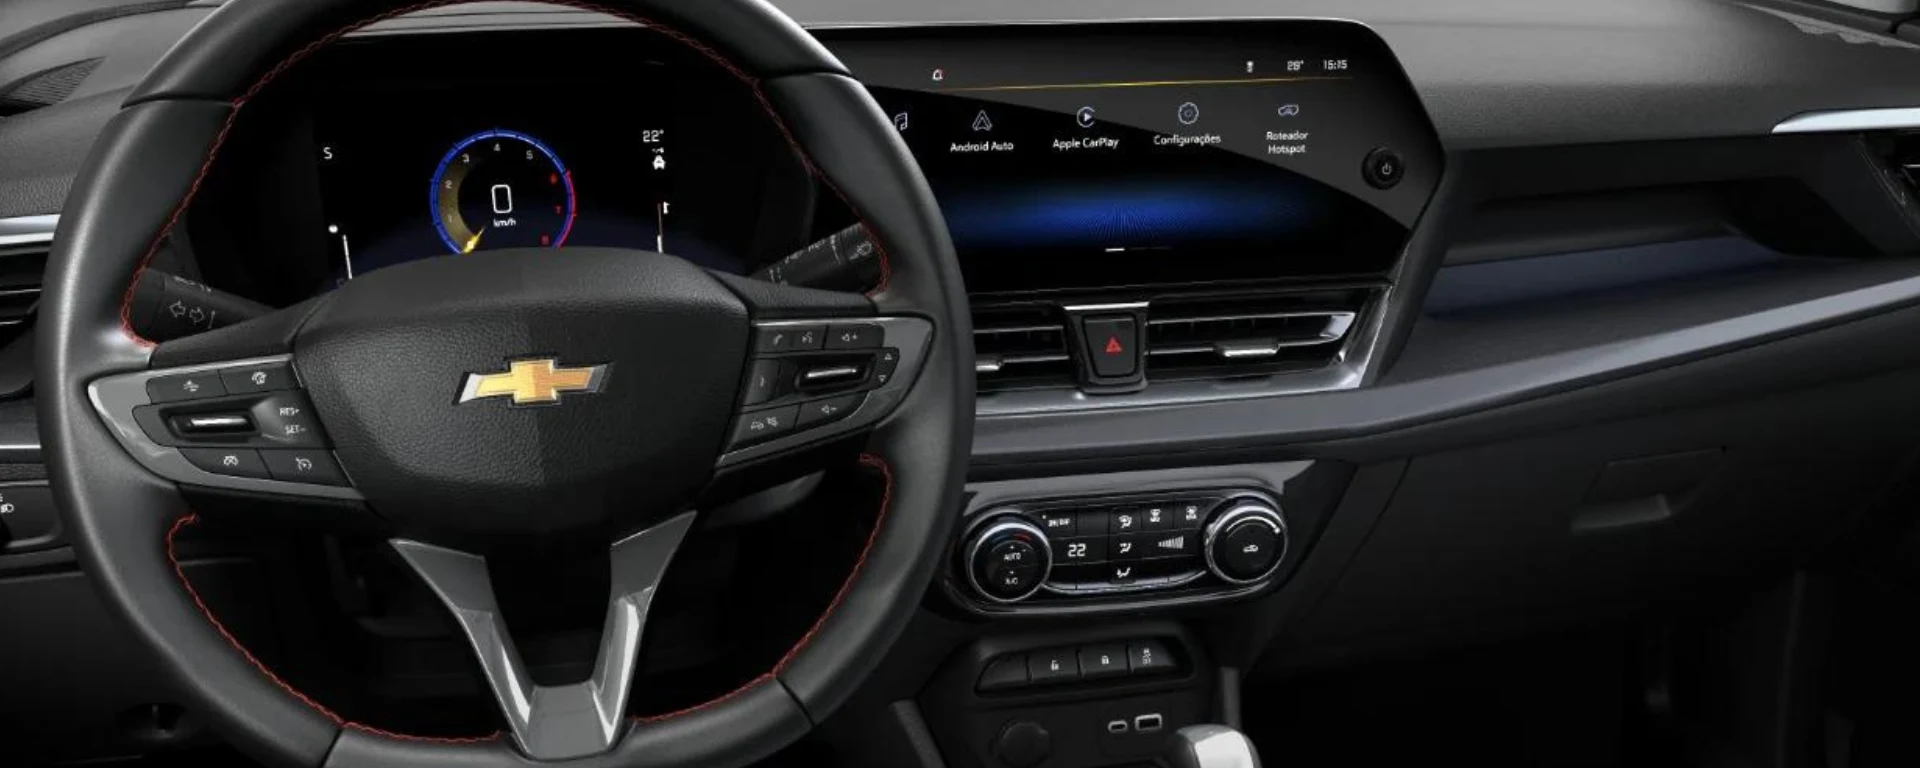 Opções de conectividade no SUV com carregamento por indução, portas USB, Wi-Fi, OnStar®, tela de 11 polegadas do Chevrolet MyLink